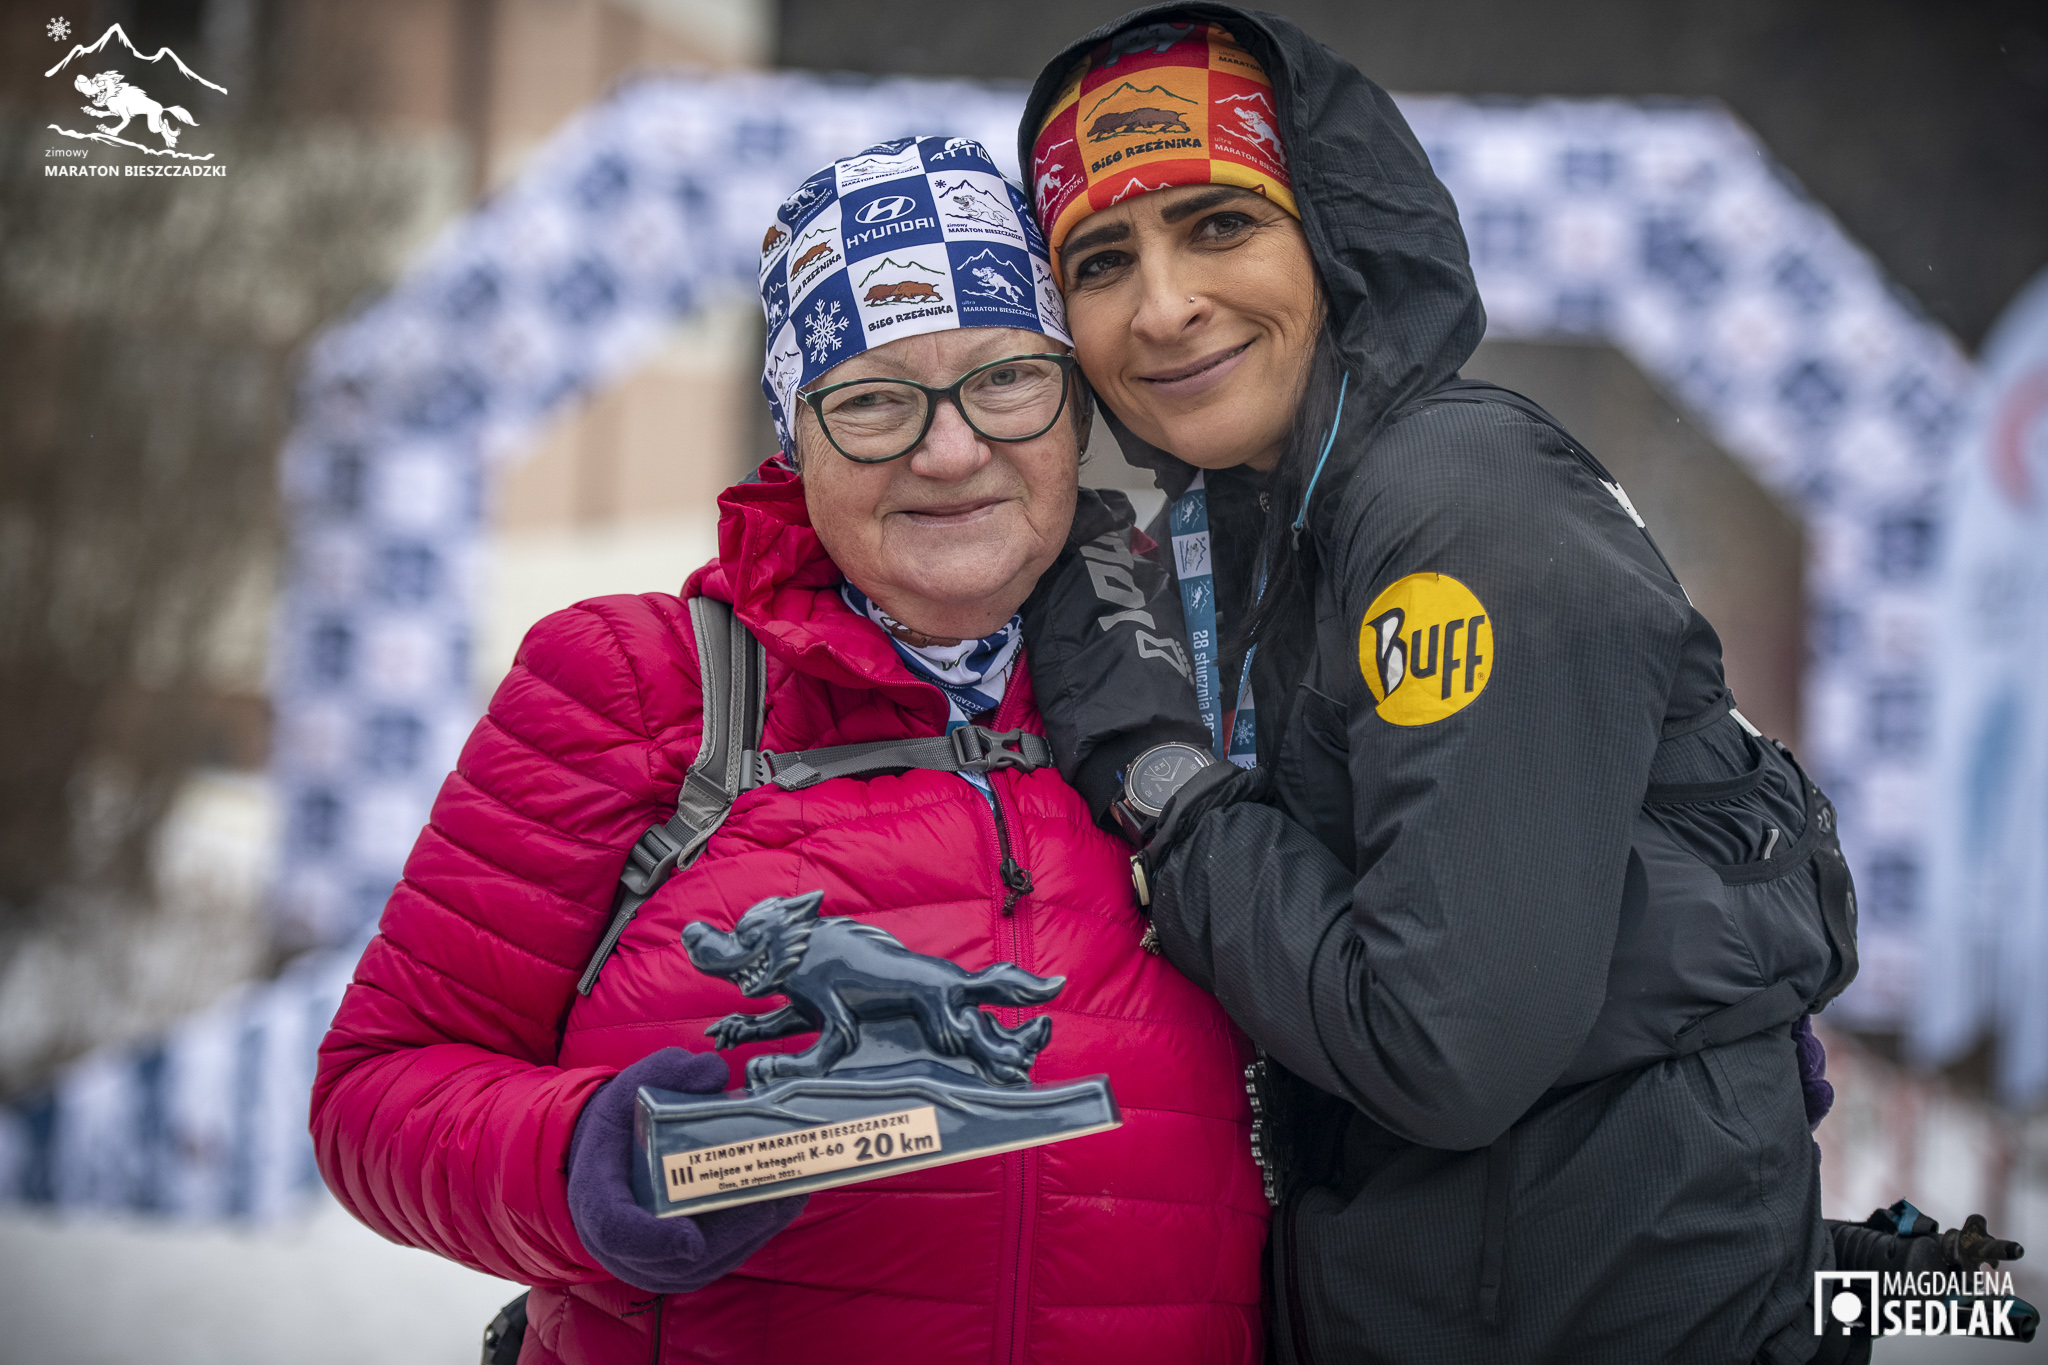 Zimowy Maraton Bieszczadzki